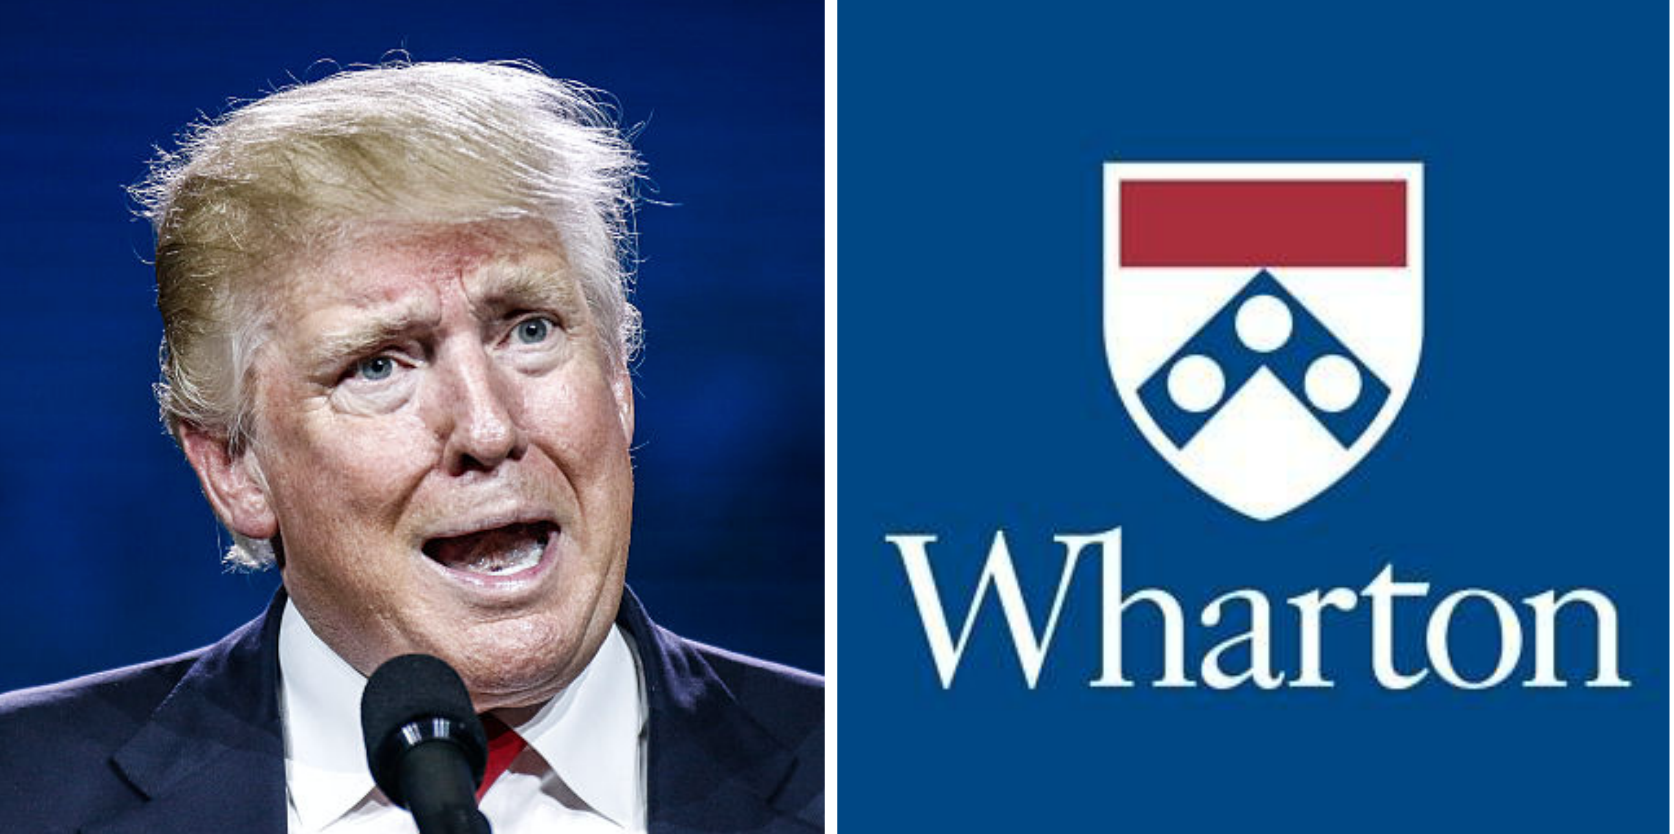  “No nos representas”: La carta a Trump de la universidad donde el magnate estudió